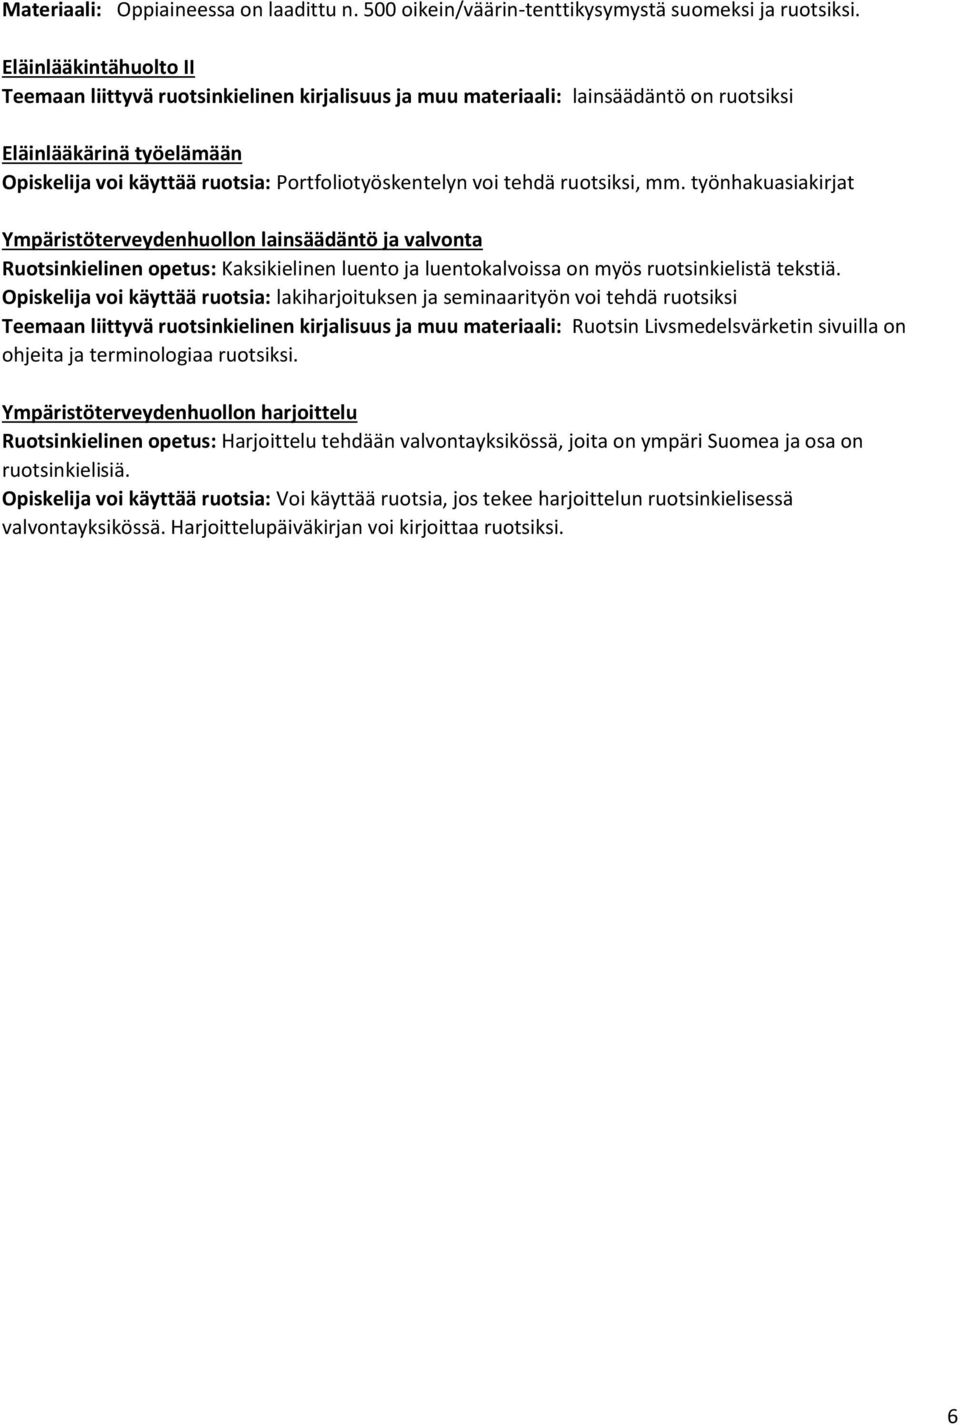 tehdä ruotsiksi, mm. työnhakuasiakirjat Ympäristöterveydenhuollon lainsäädäntö ja valvonta Ruotsinkielinen opetus: Kaksikielinen luento ja luentokalvoissa on myös ruotsinkielistä tekstiä.